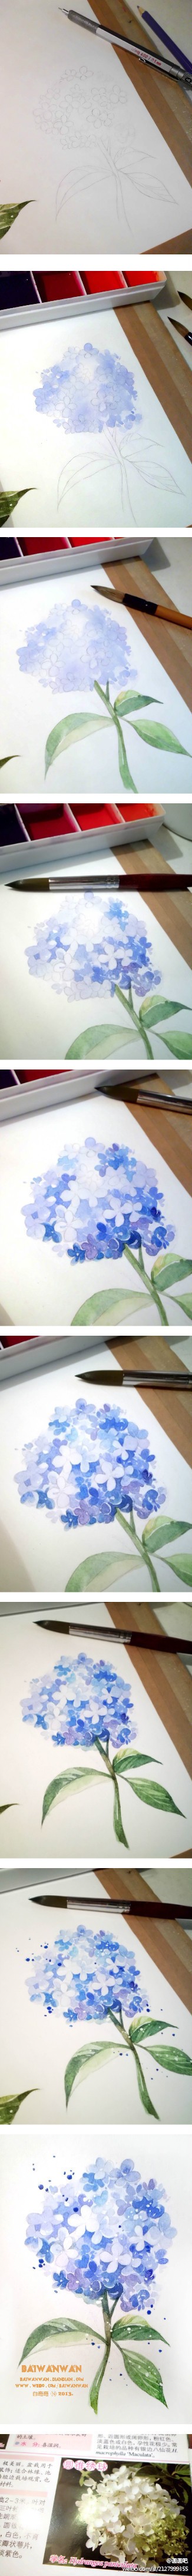 小白的花花世界の水彩画创作过程图~~【微博@白弯弯 · 作品】